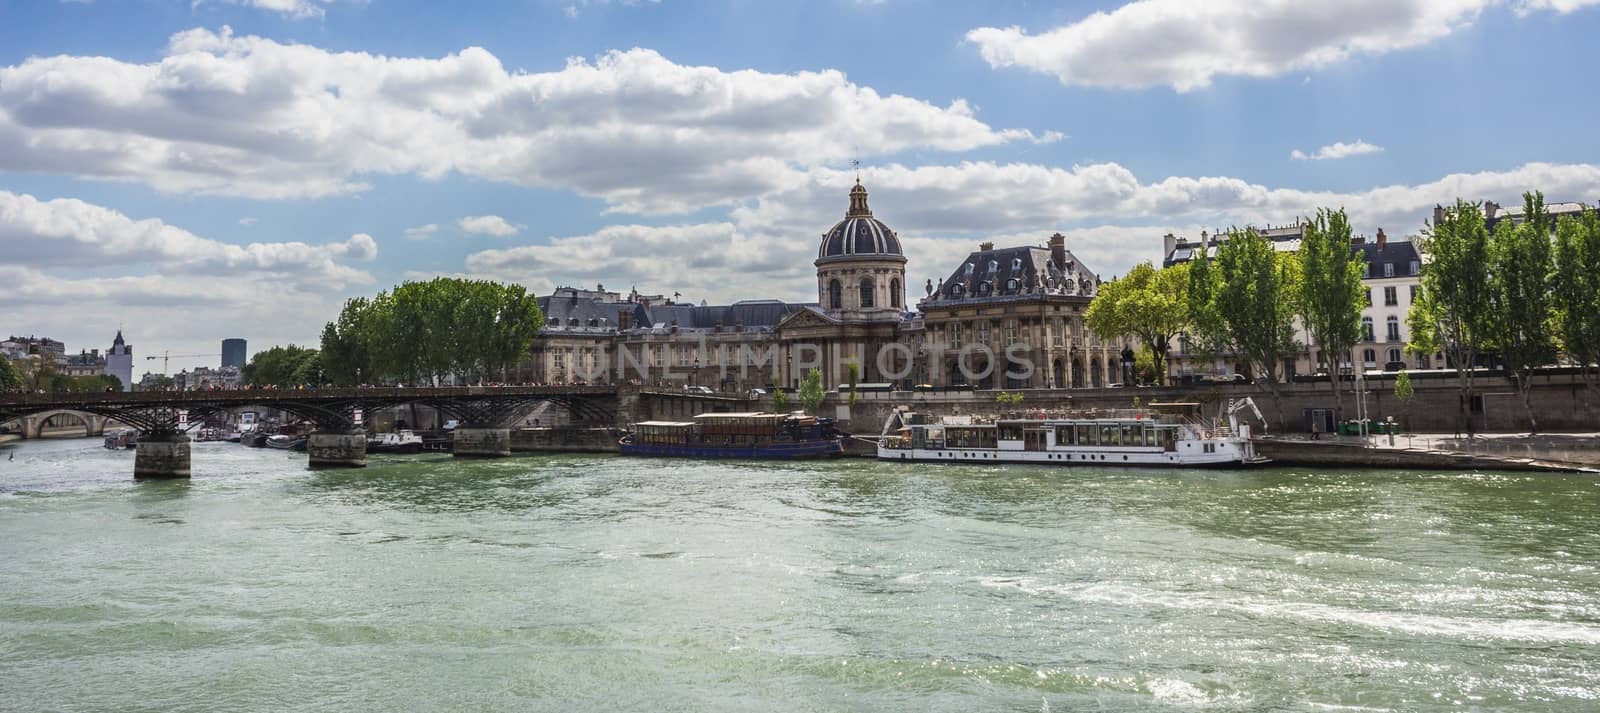 Paris, Pont de Arts by goghy73